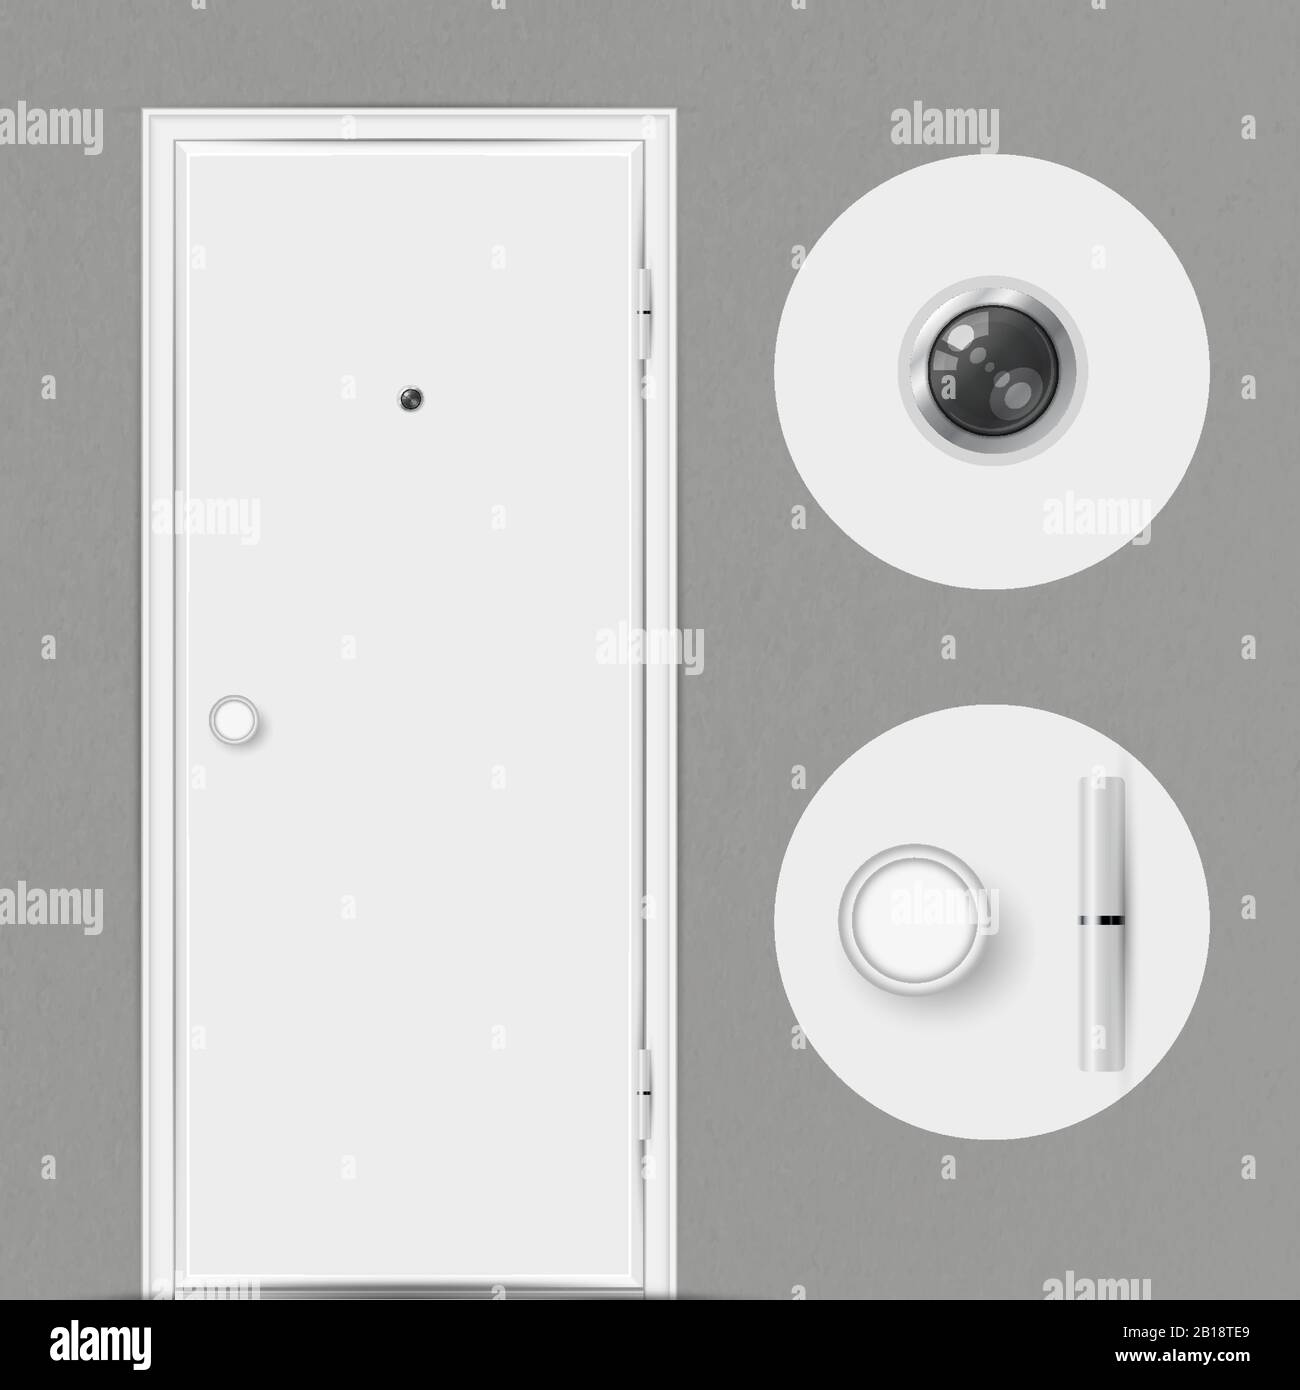 Porta bianca chiusa con spioncino isolato su sfondo grigio. Spioncino, maniglia della porta e cerniera della porta in primo piano. Illustrazione del vettore. Illustrazione Vettoriale